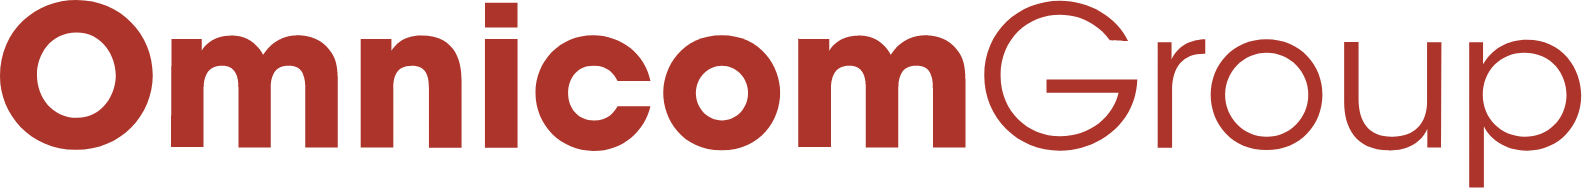 Omnicom logo large (transparent PNG)